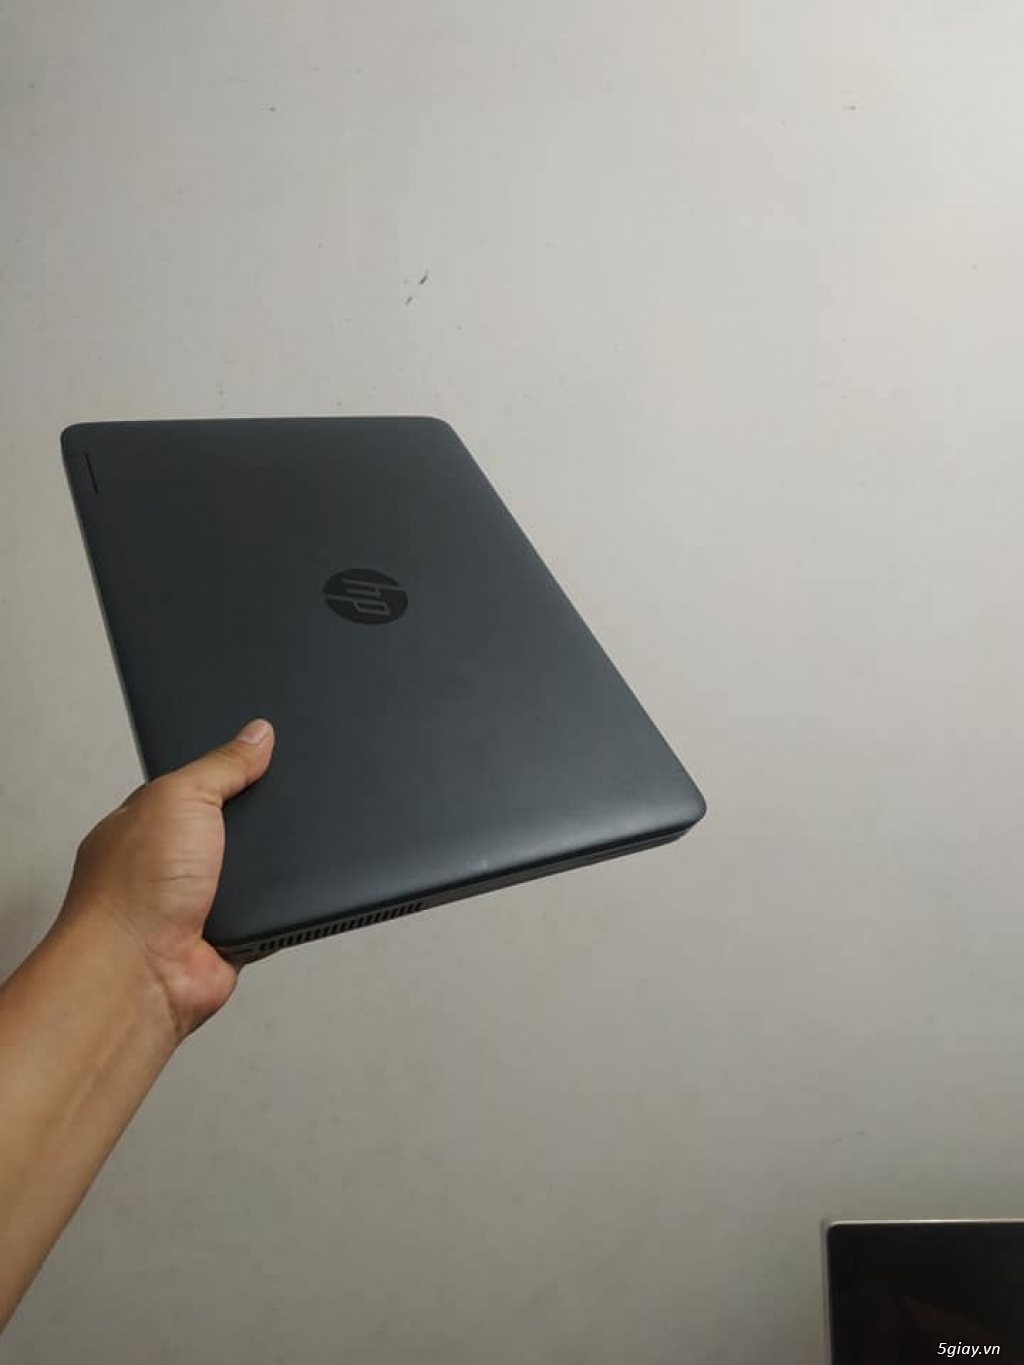 Laptop Hp Probook 640 G3 - Hàng xách tay USA - 2